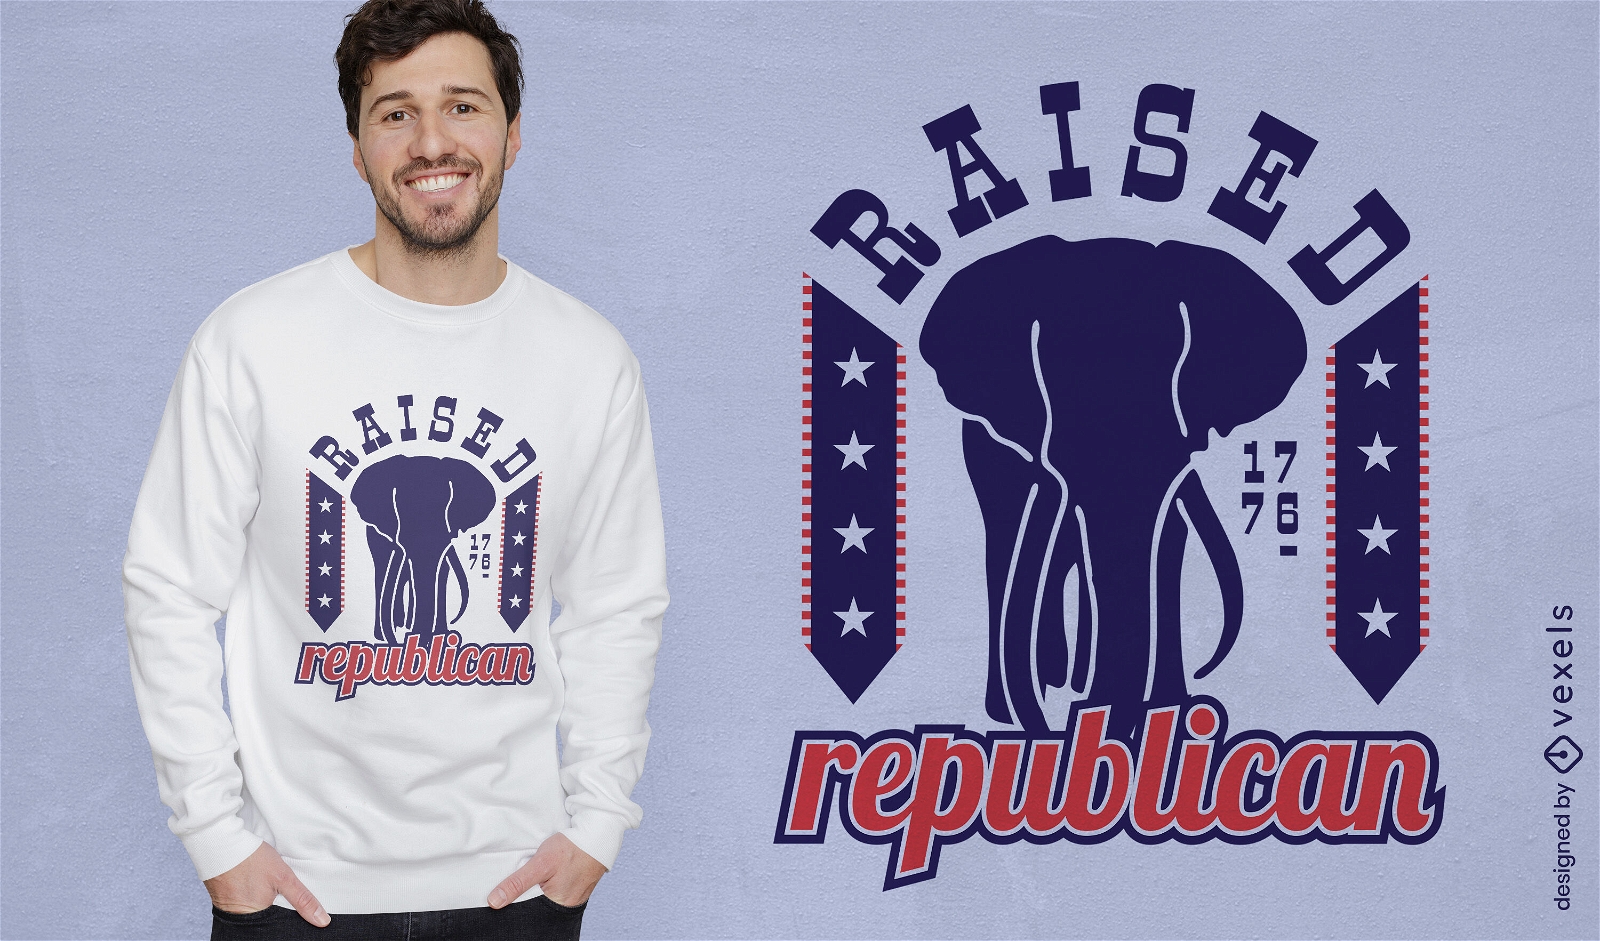 Diseño de camiseta republicana en relieve.